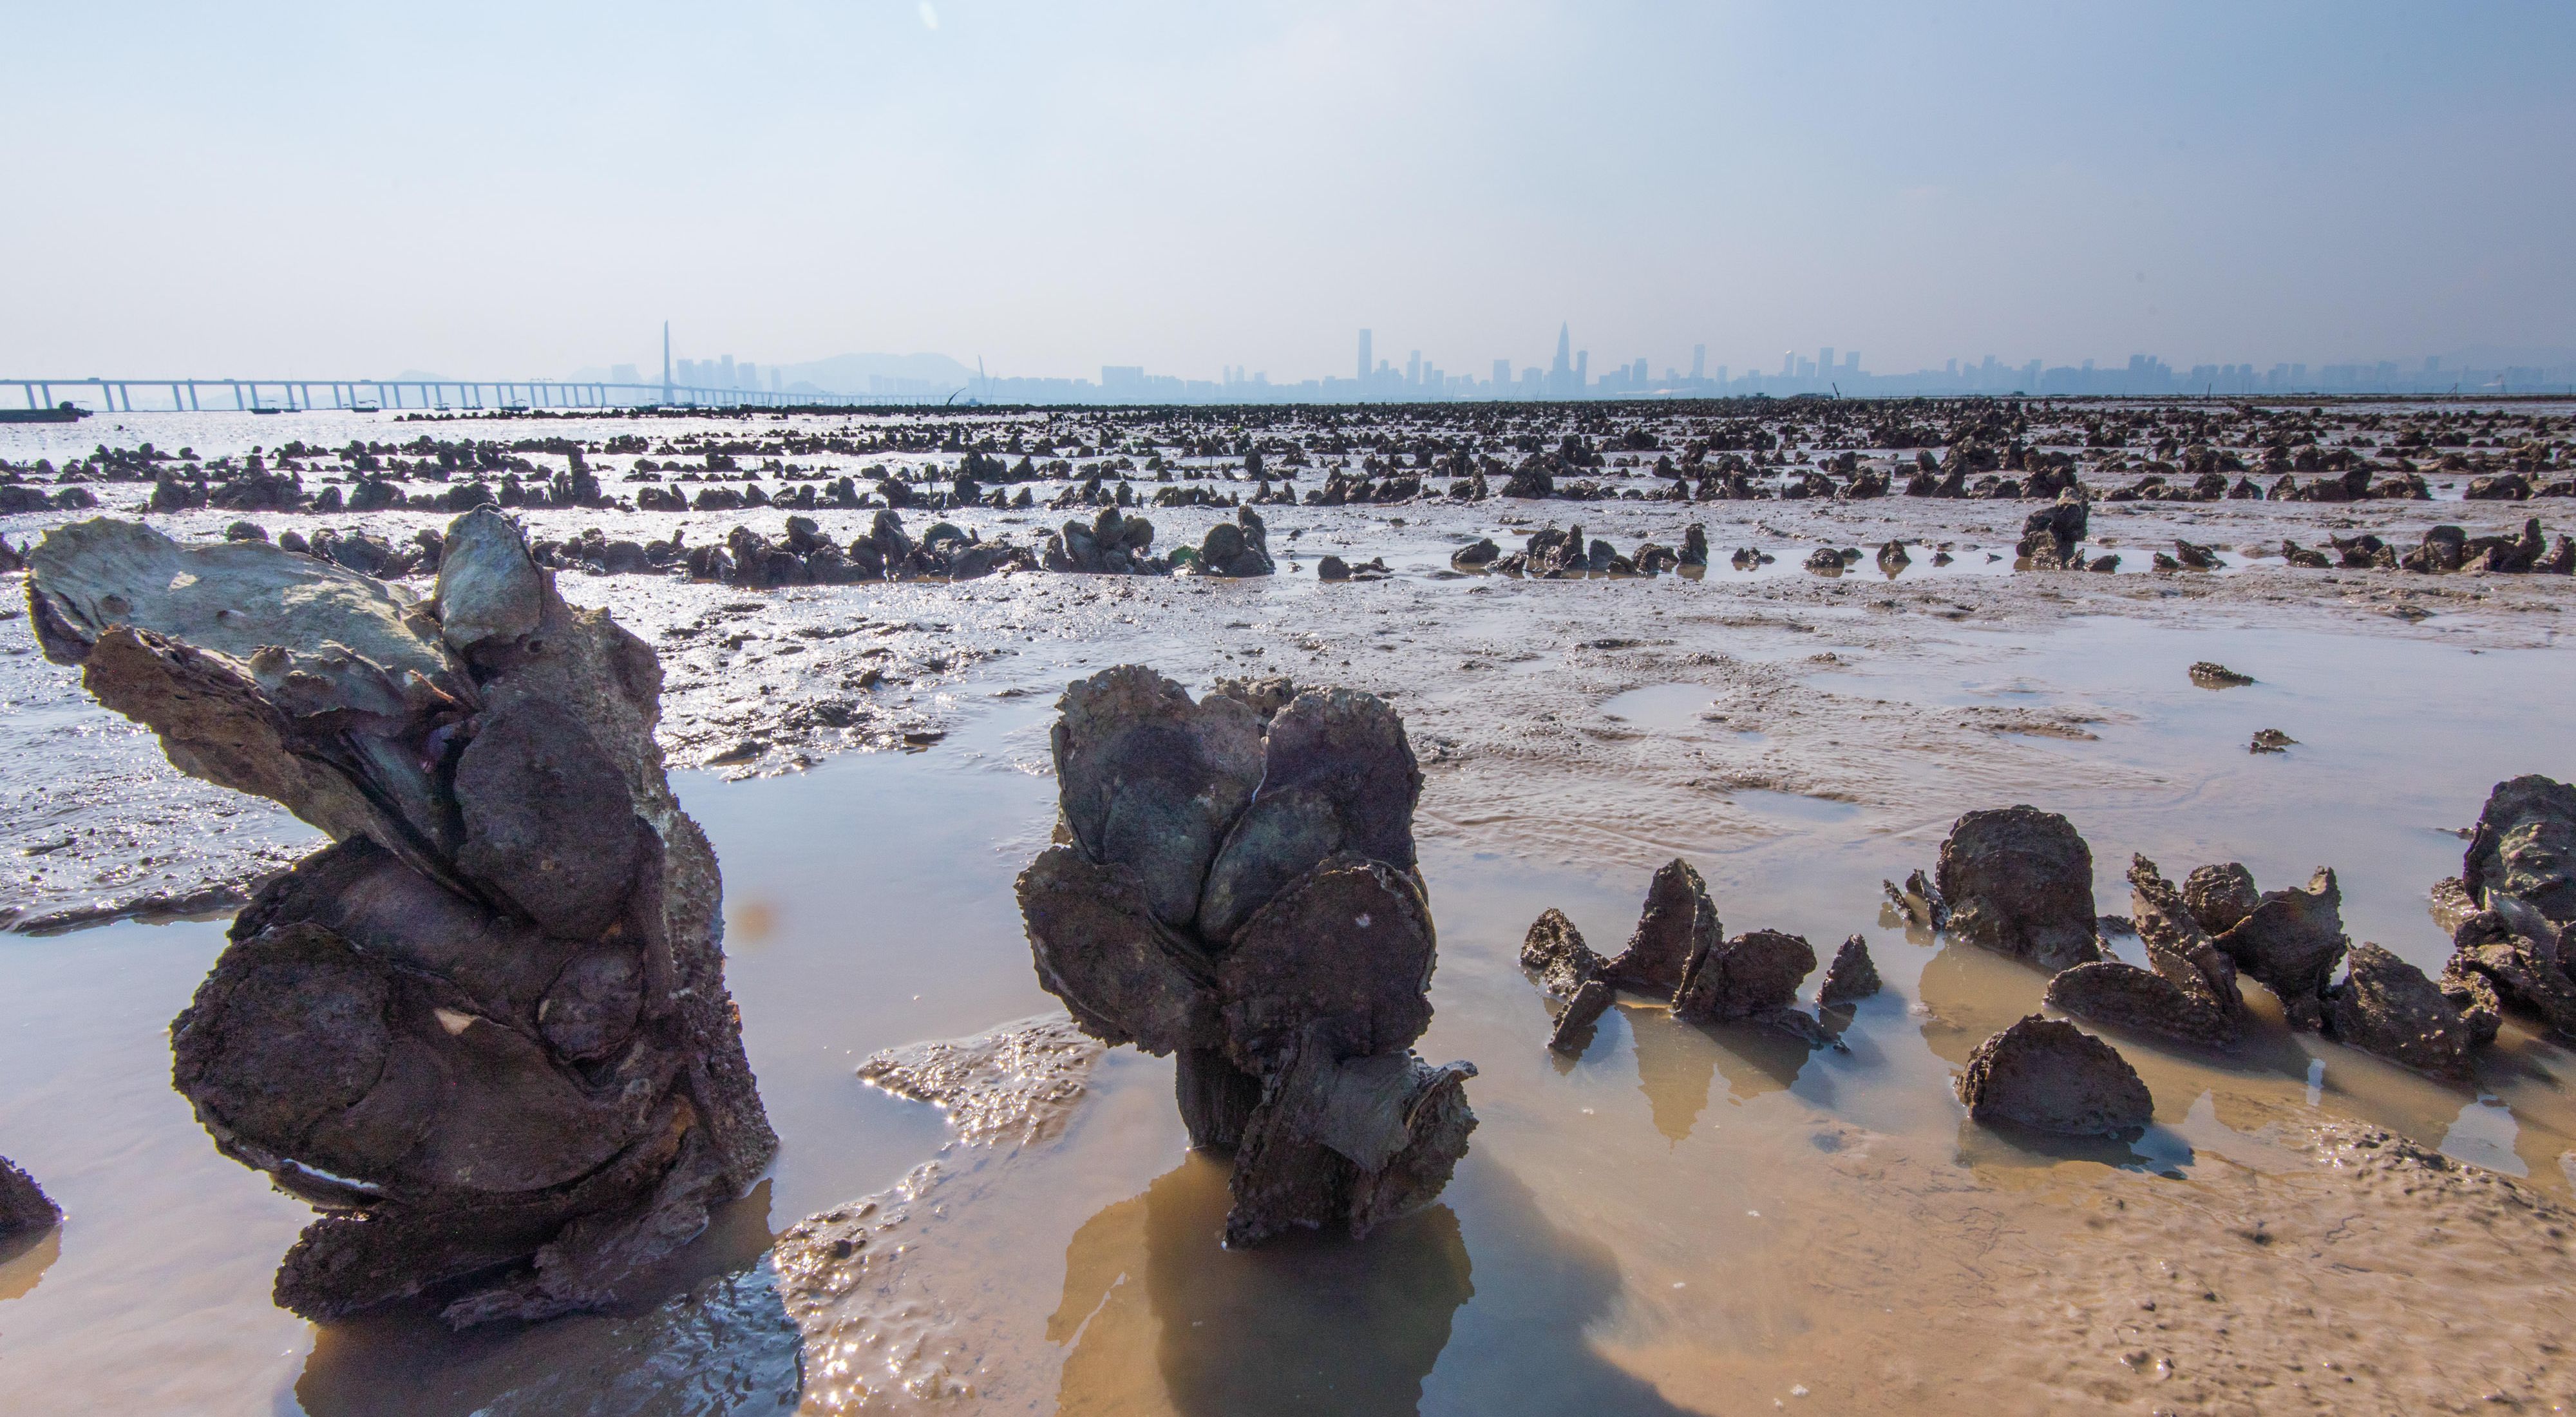 養殖蠔業於香港有700年歷史。為了使人與自然都可持續發展，大自然保護協會正在恢復曾經消失的蠔礁。